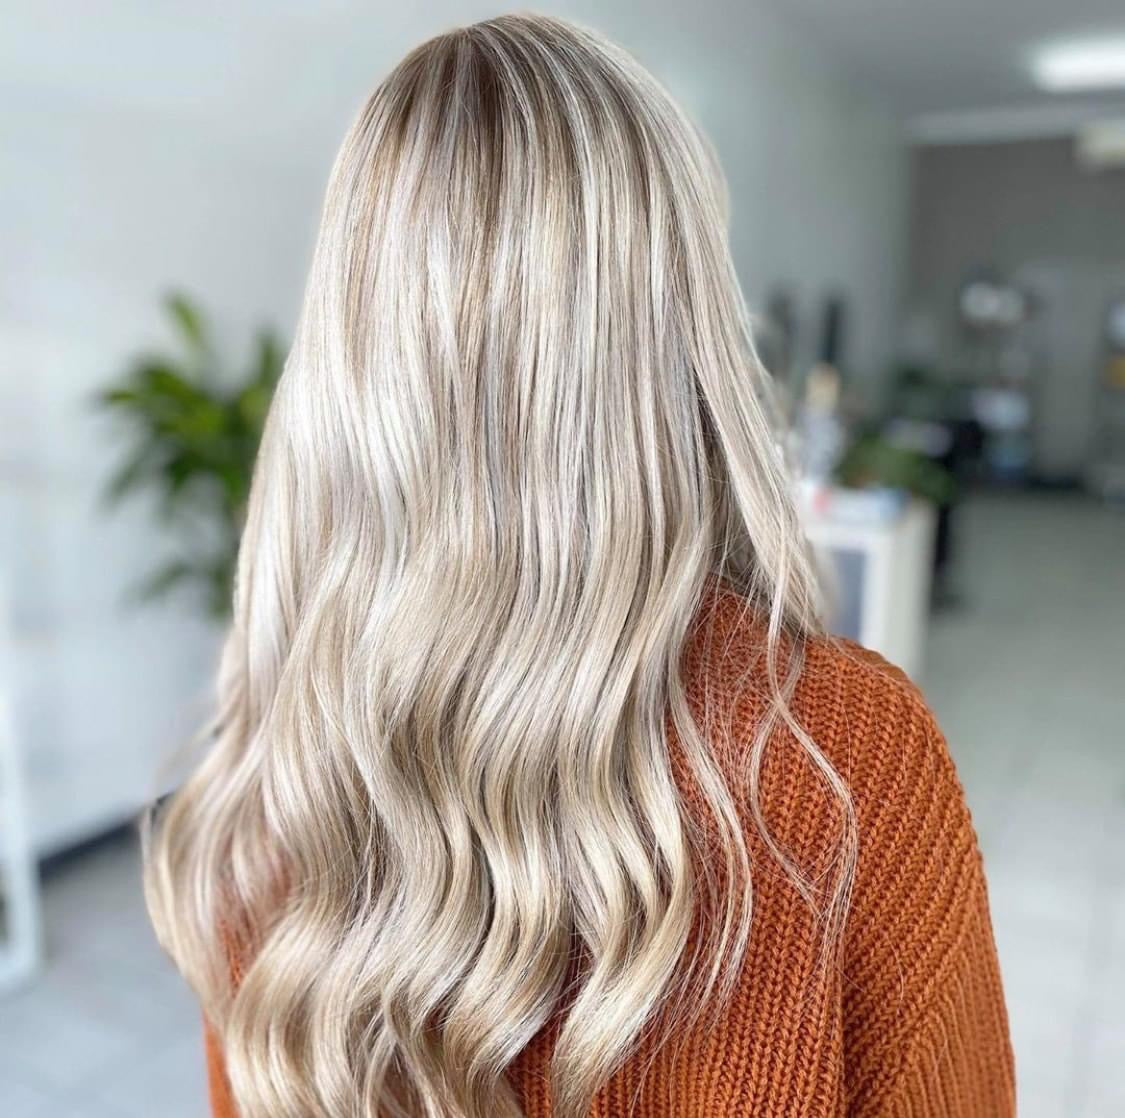 De MUVO Ultra Blonde Shampoo is een supersterke veganistische zilvershampoo voor blond en grijs haar, die ongewenste gele en koperkleurige tinten neutraliseert